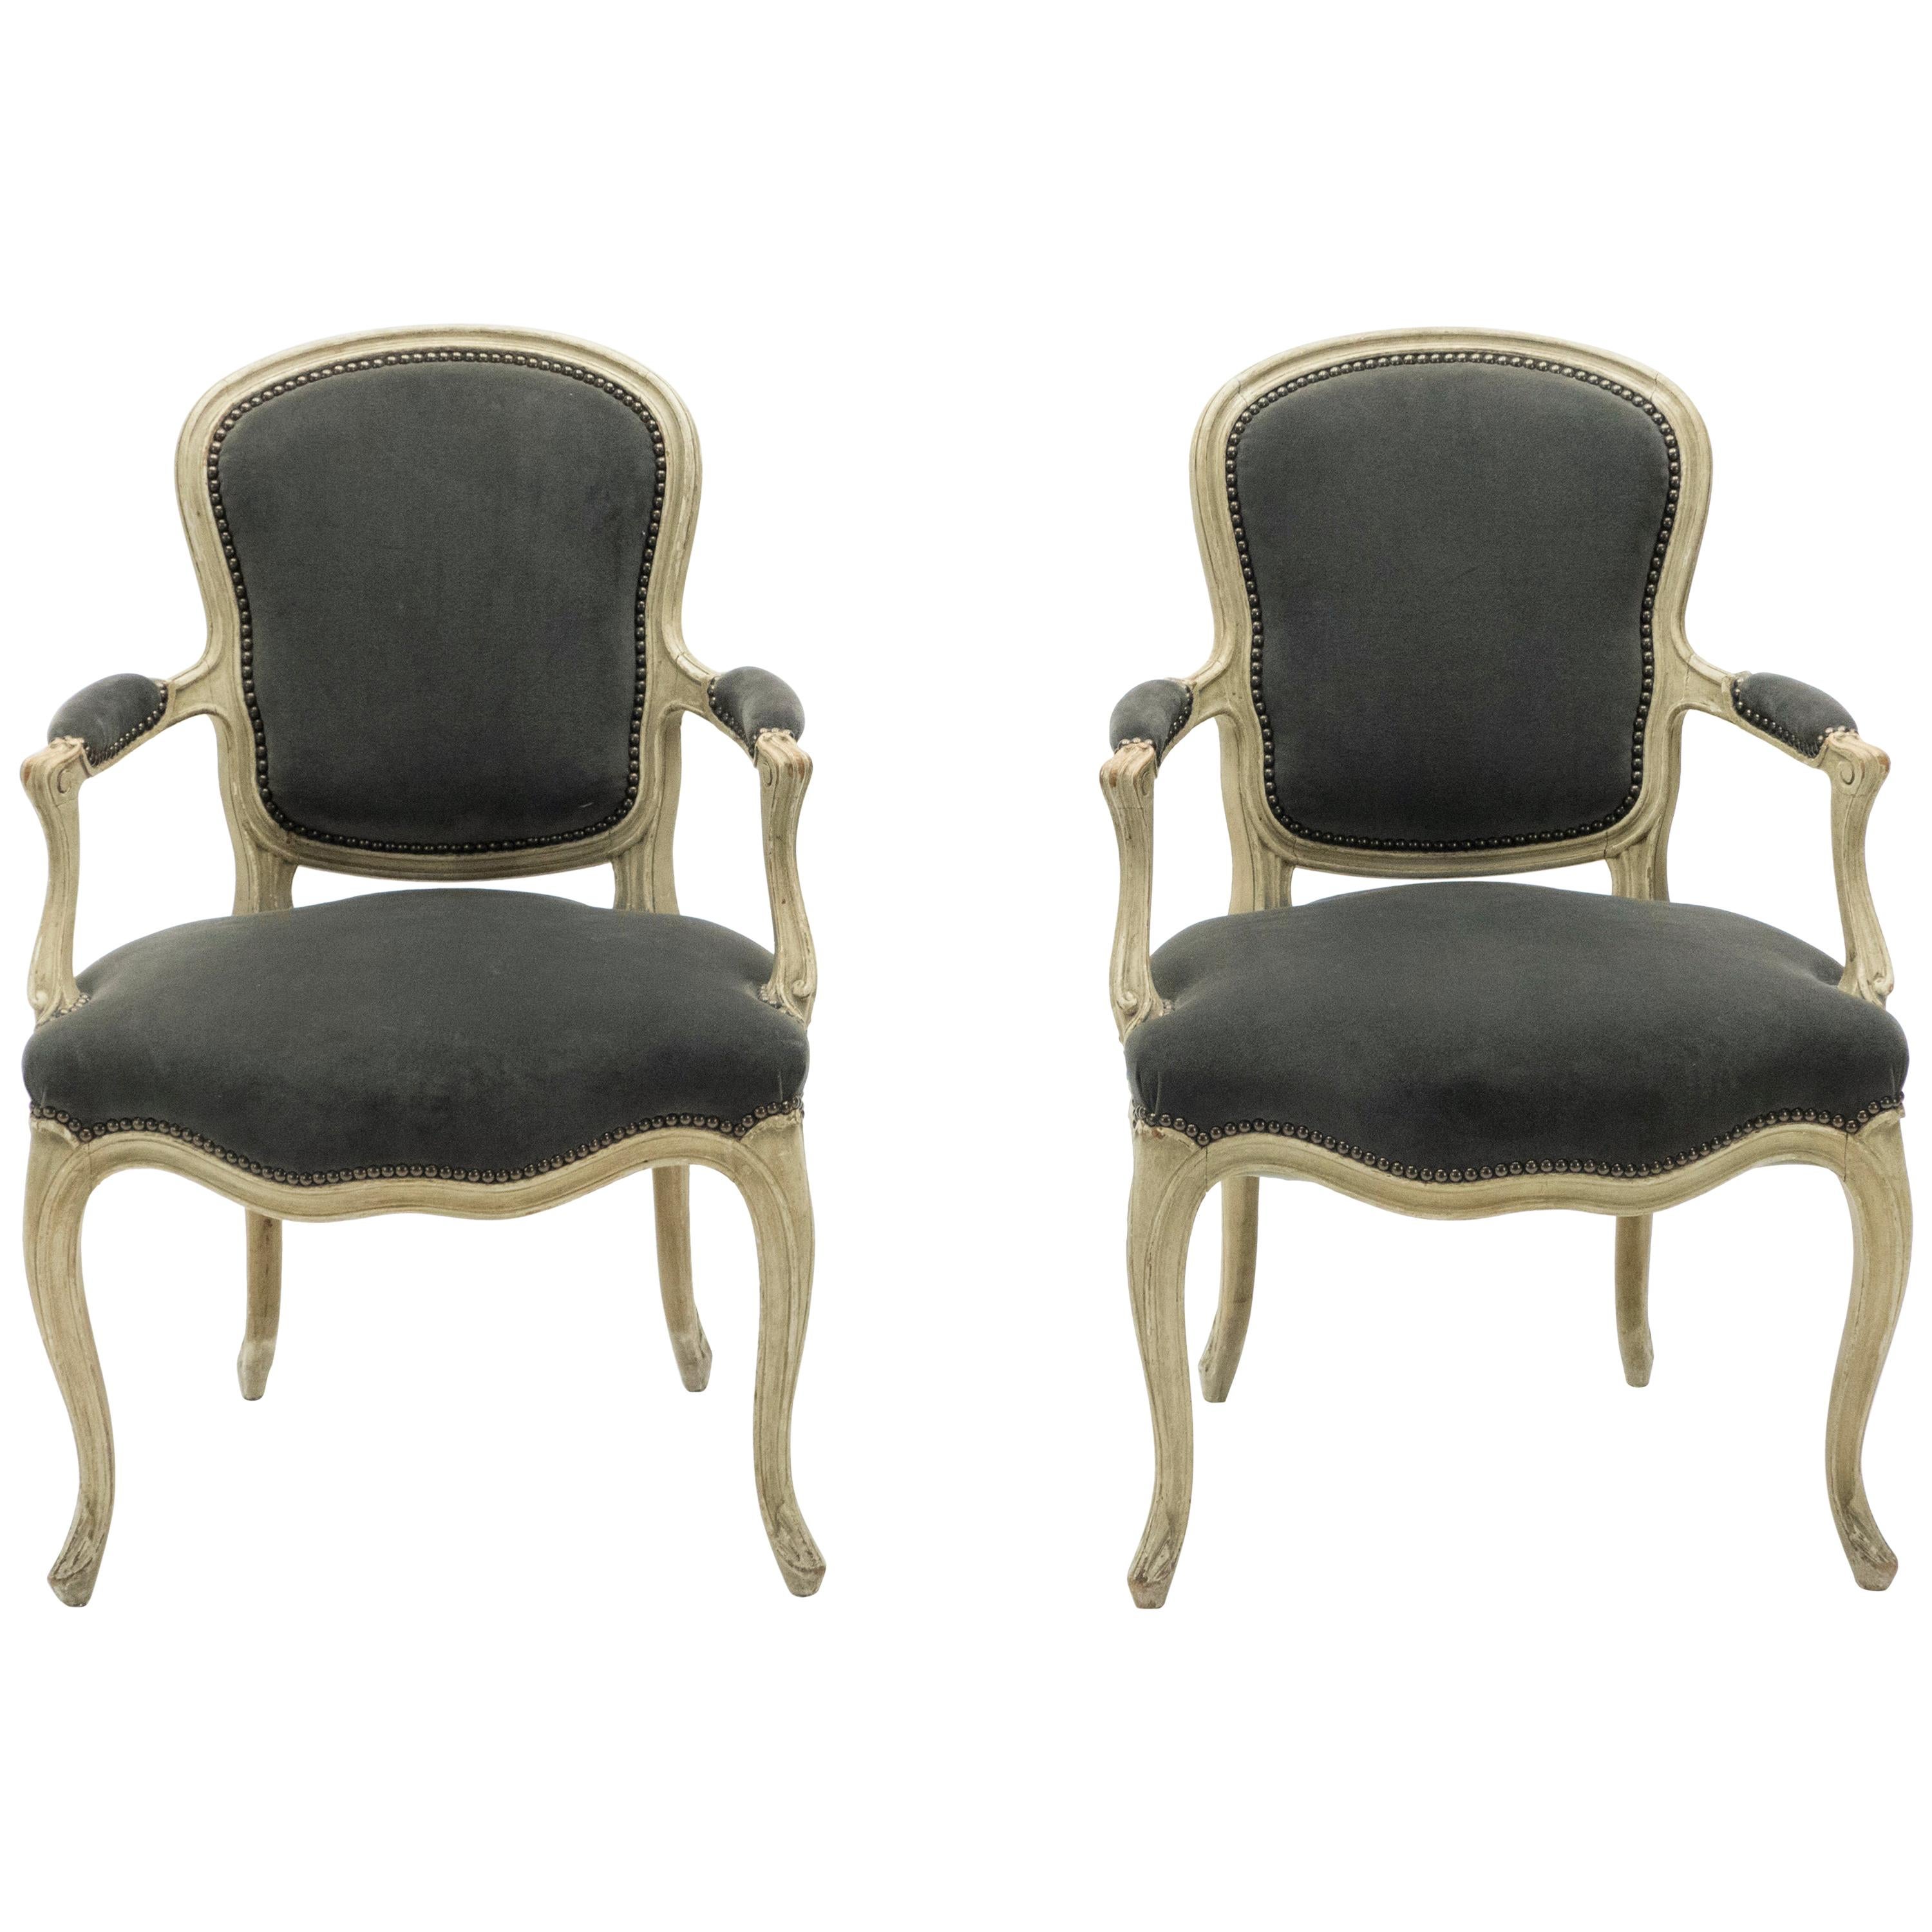 Paire rare de fauteuils néoclassiques Louis XV estampillés de la Maison Jansen, années 1940